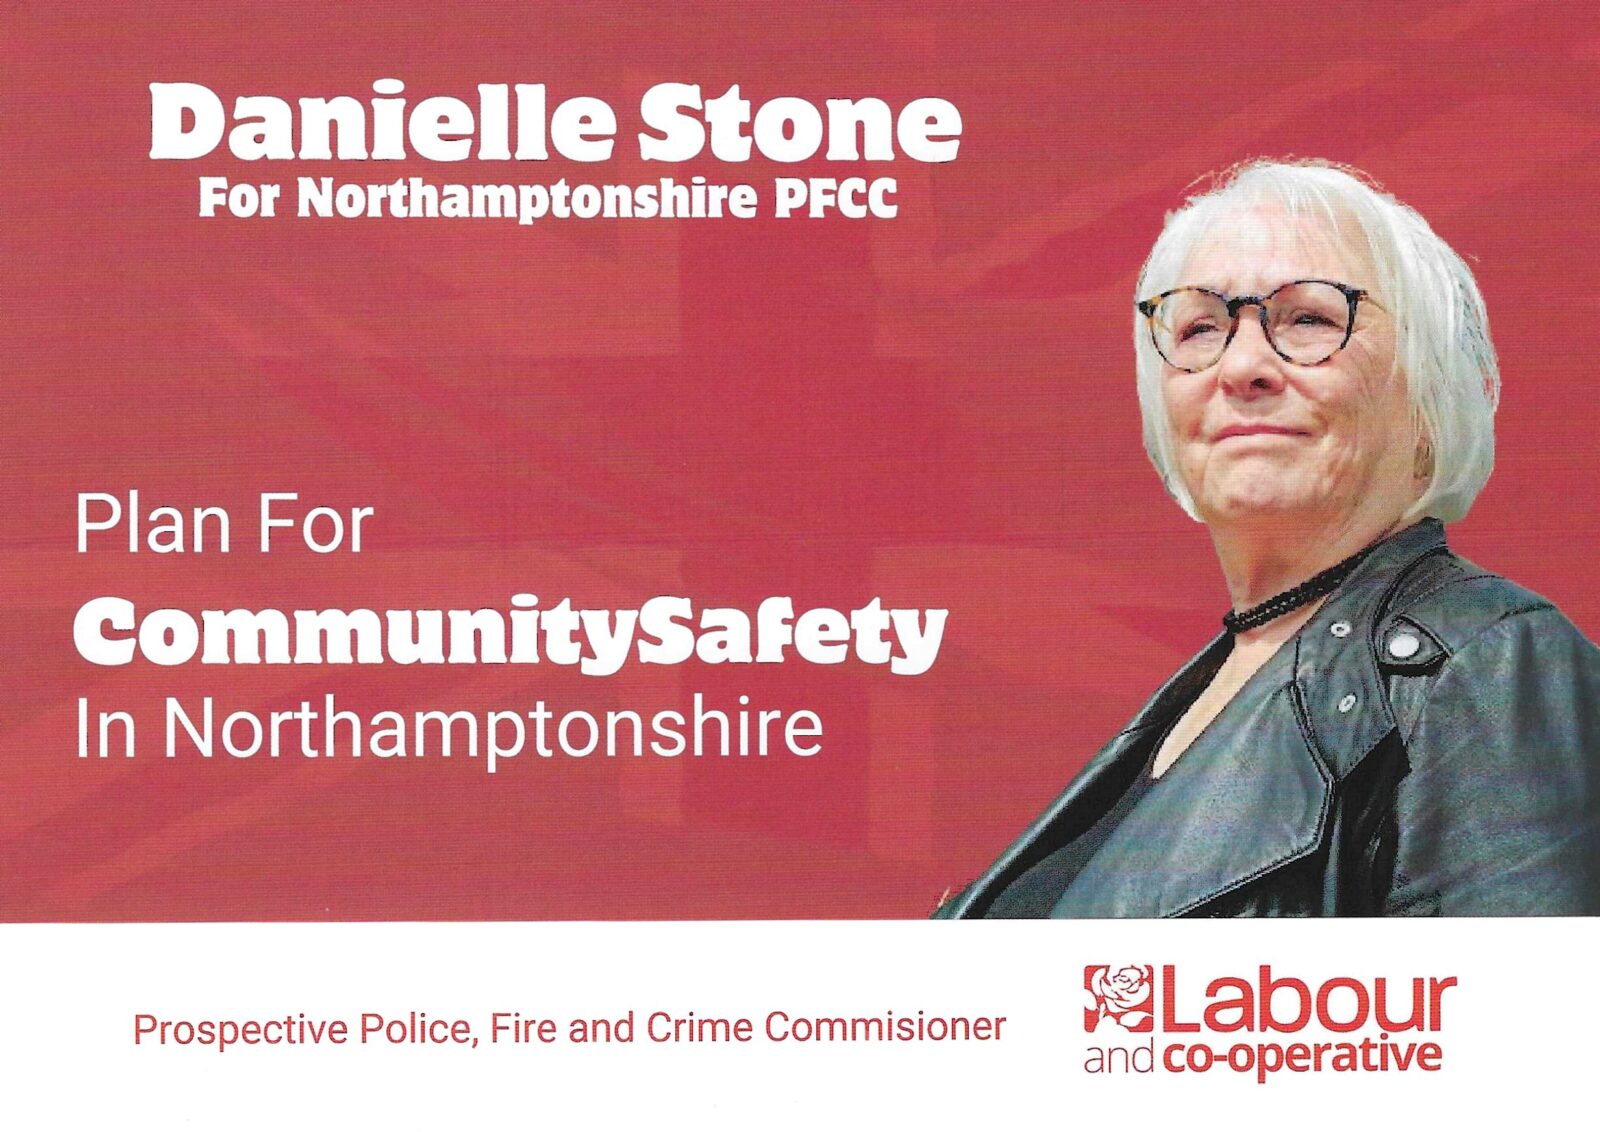 Danielle leaflet 1 front